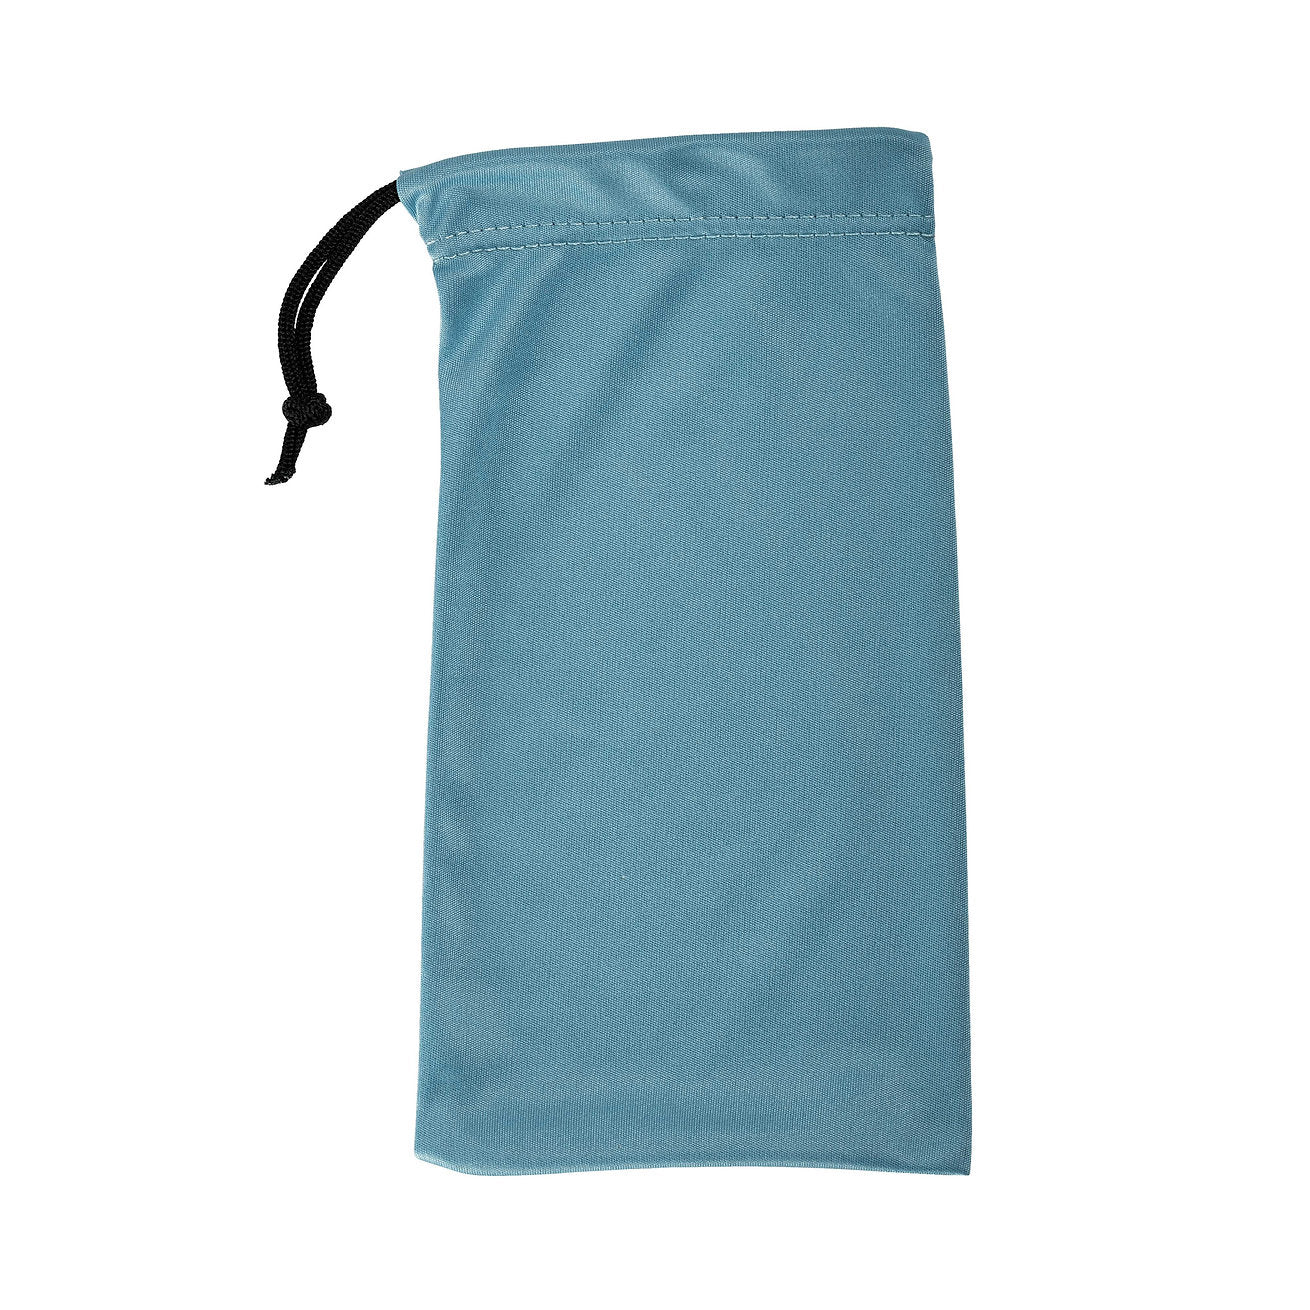 Light blue drawstring bag for glasses